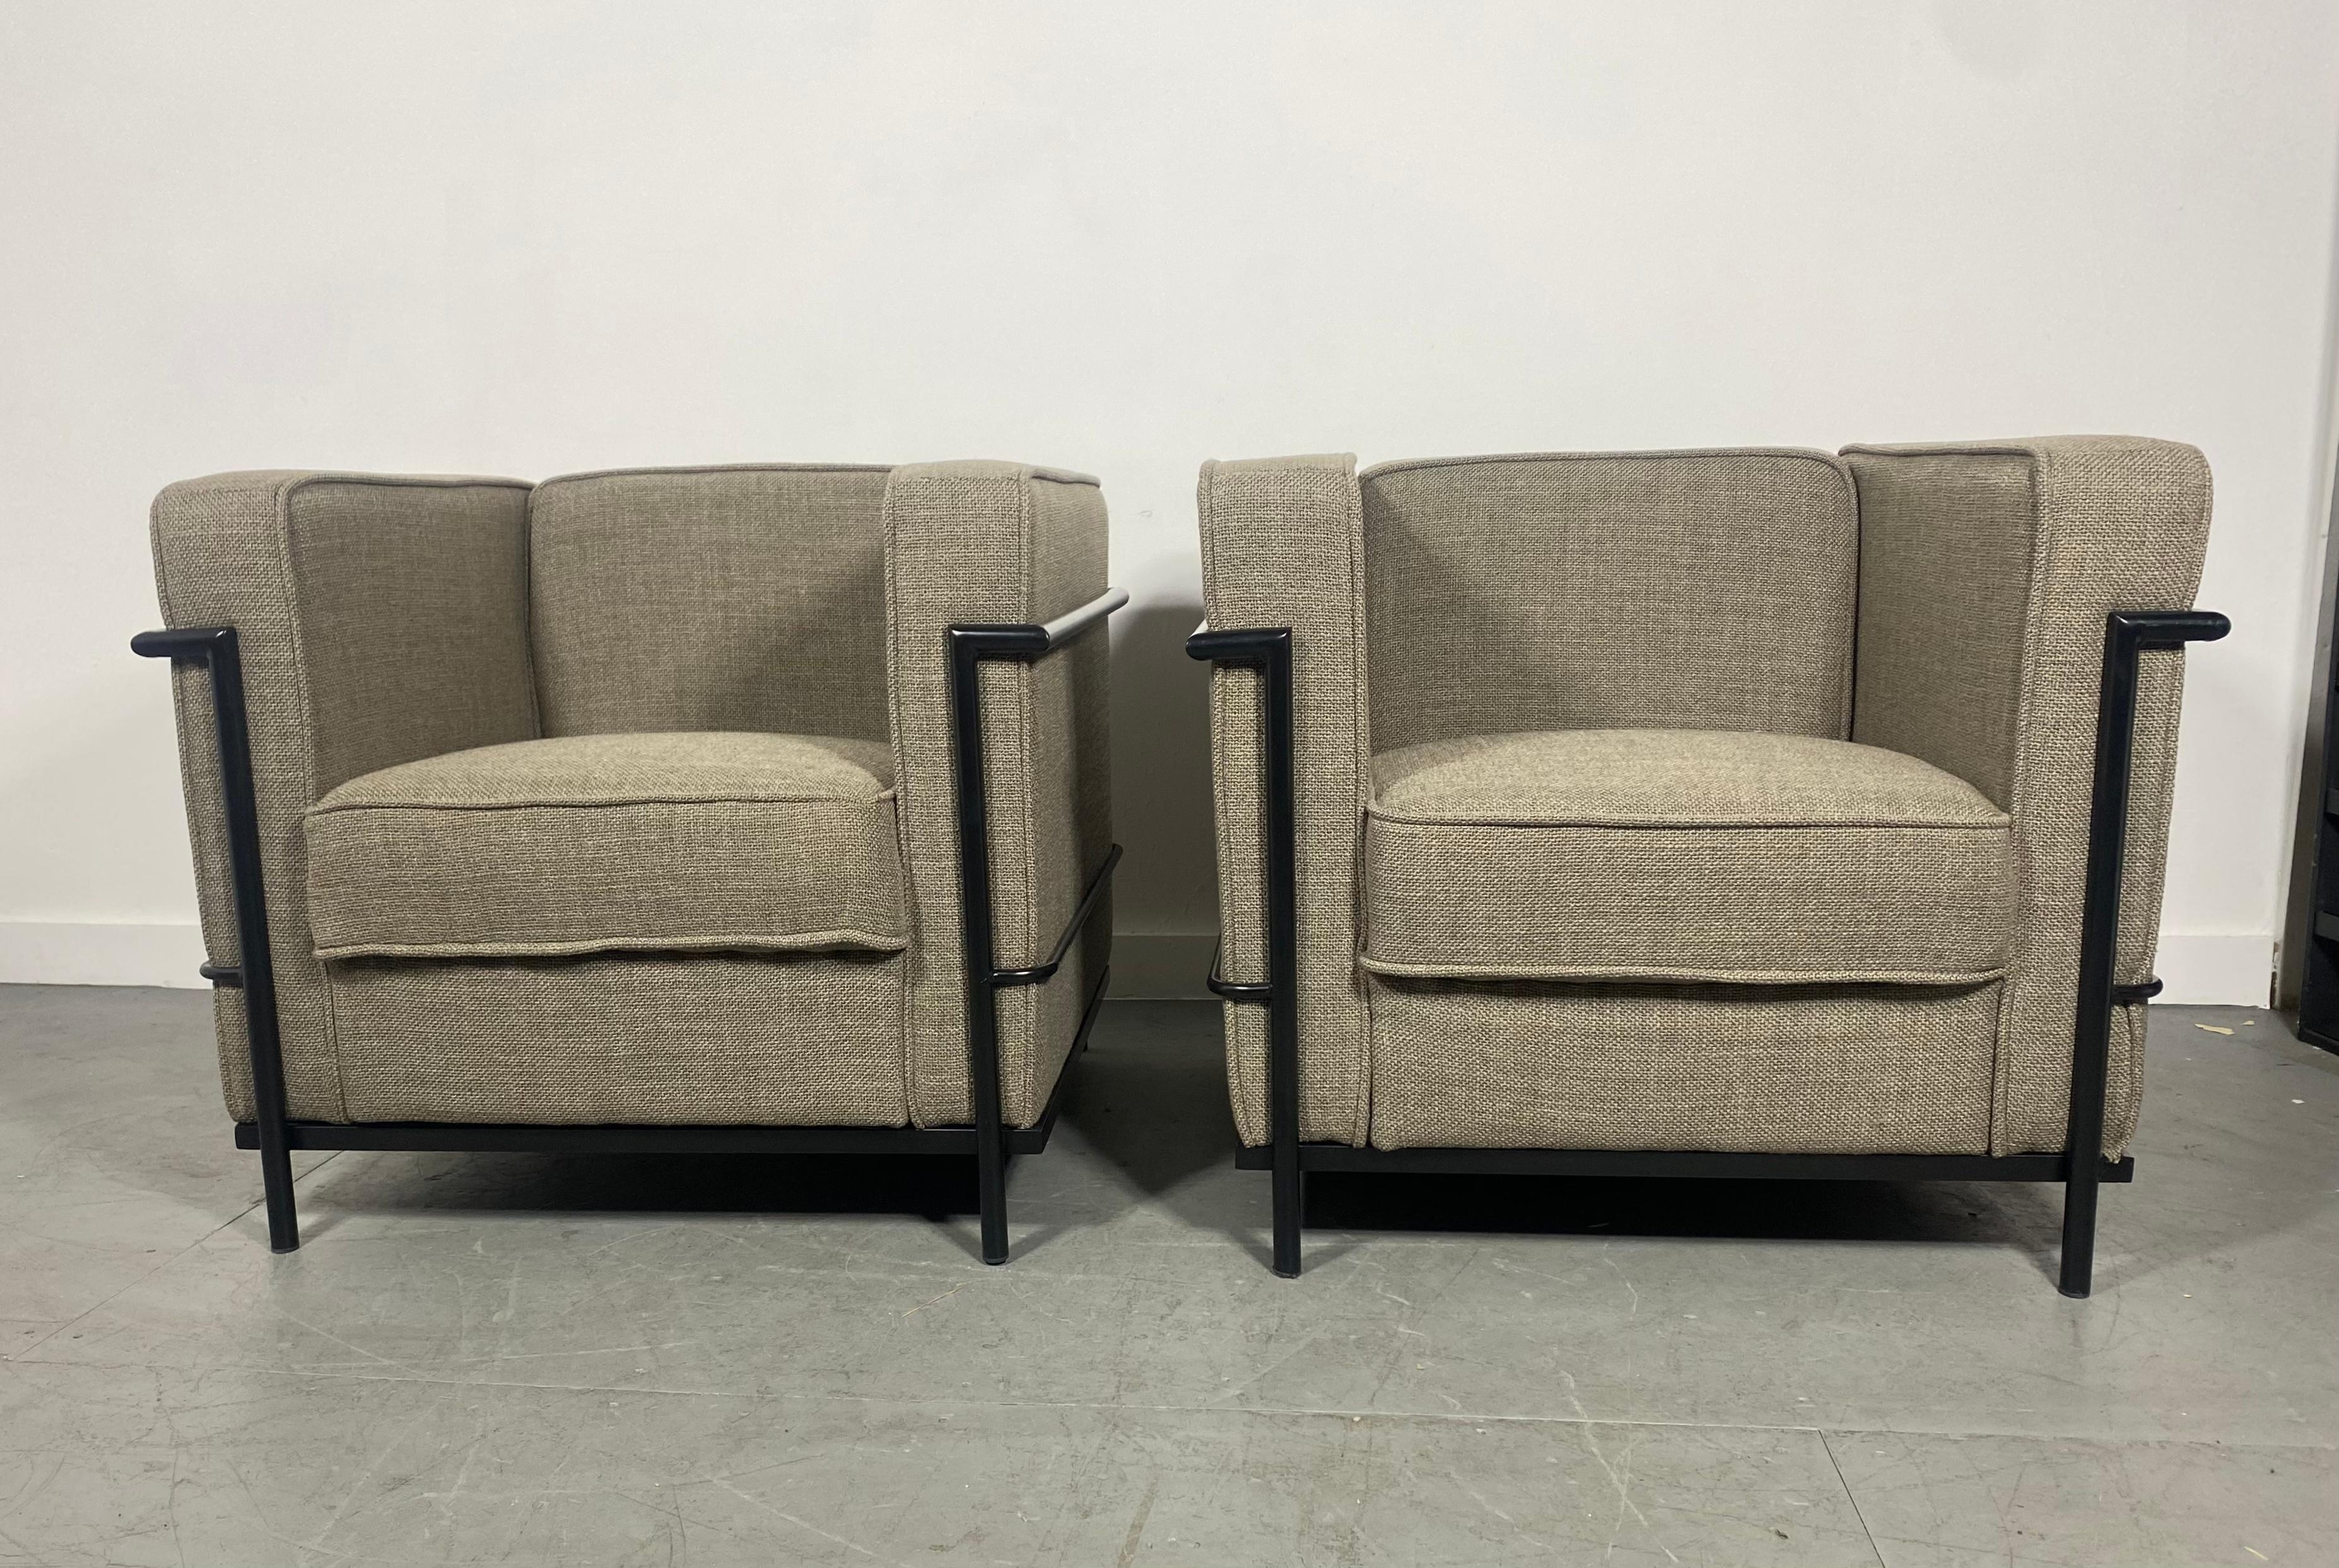 Paire de chaises longues contemporaines LC-2 de style Bauhaus. Design/One classique de Le Corbusier. Fabricant inconnu. Bel état d'origine. Cadres enduits de poudre noire, tissu de qualité. Livraison en main propre disponible à New York City ou